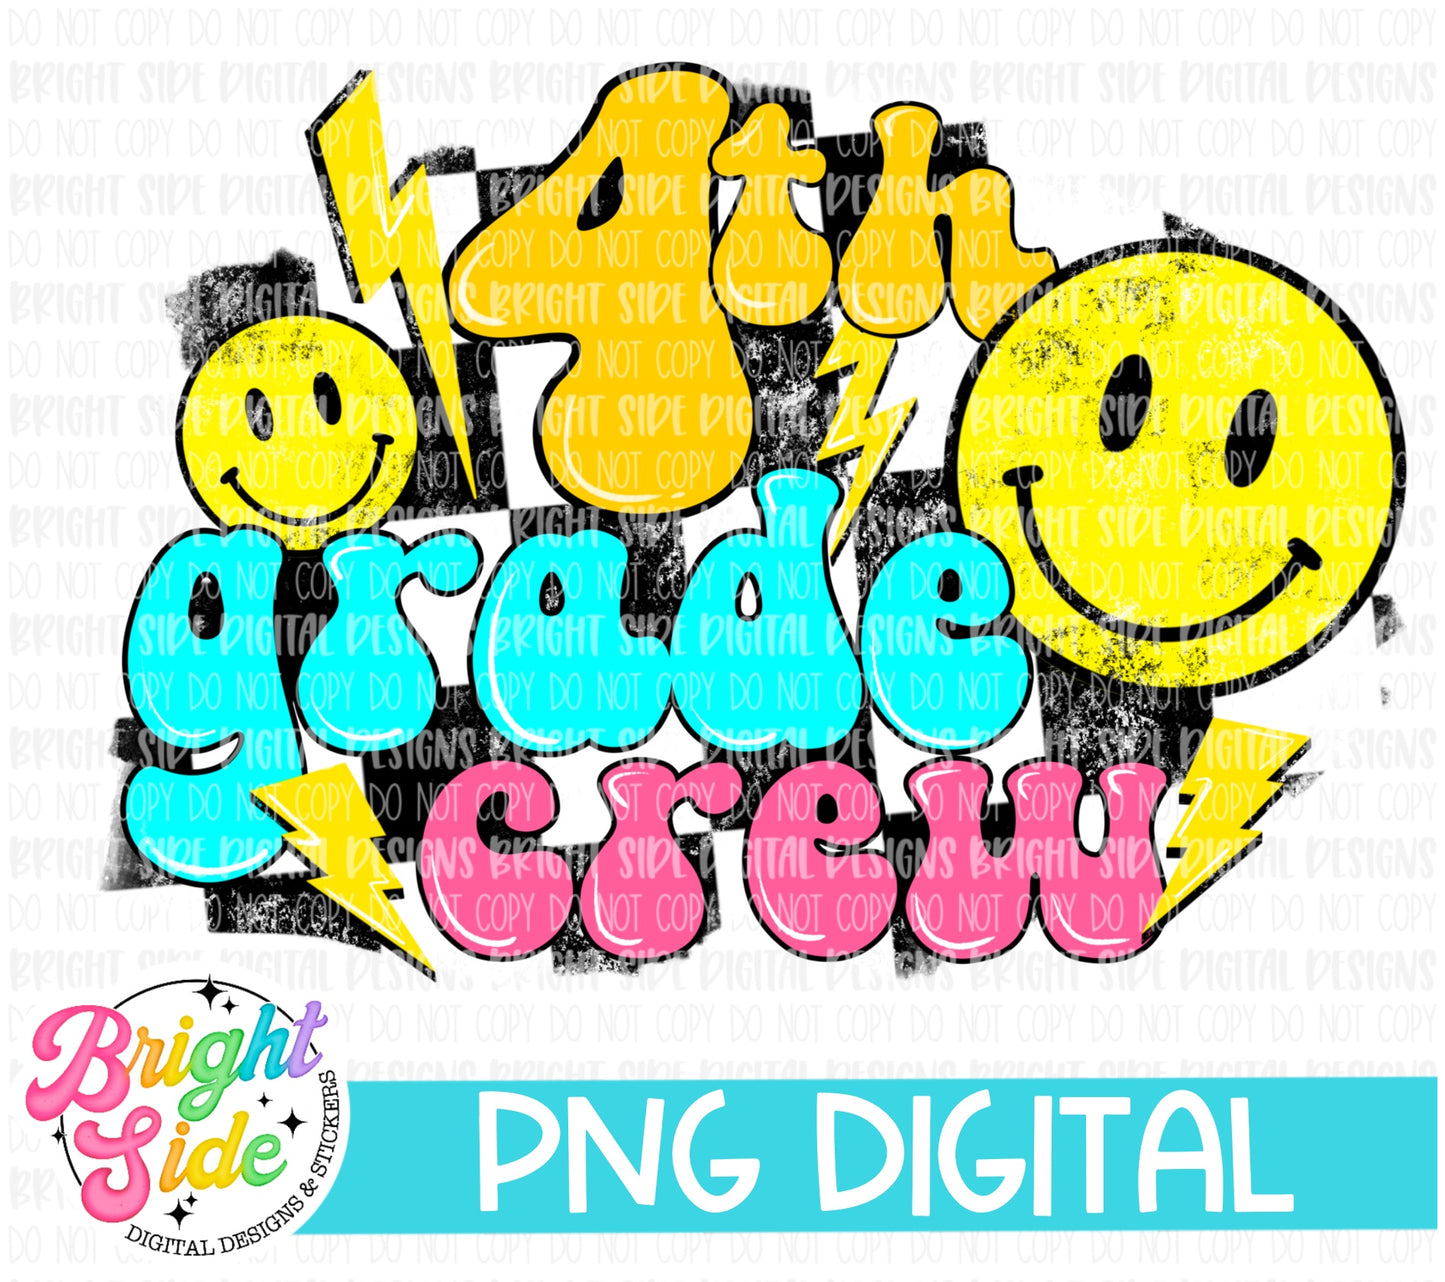 Fourth grade Crew